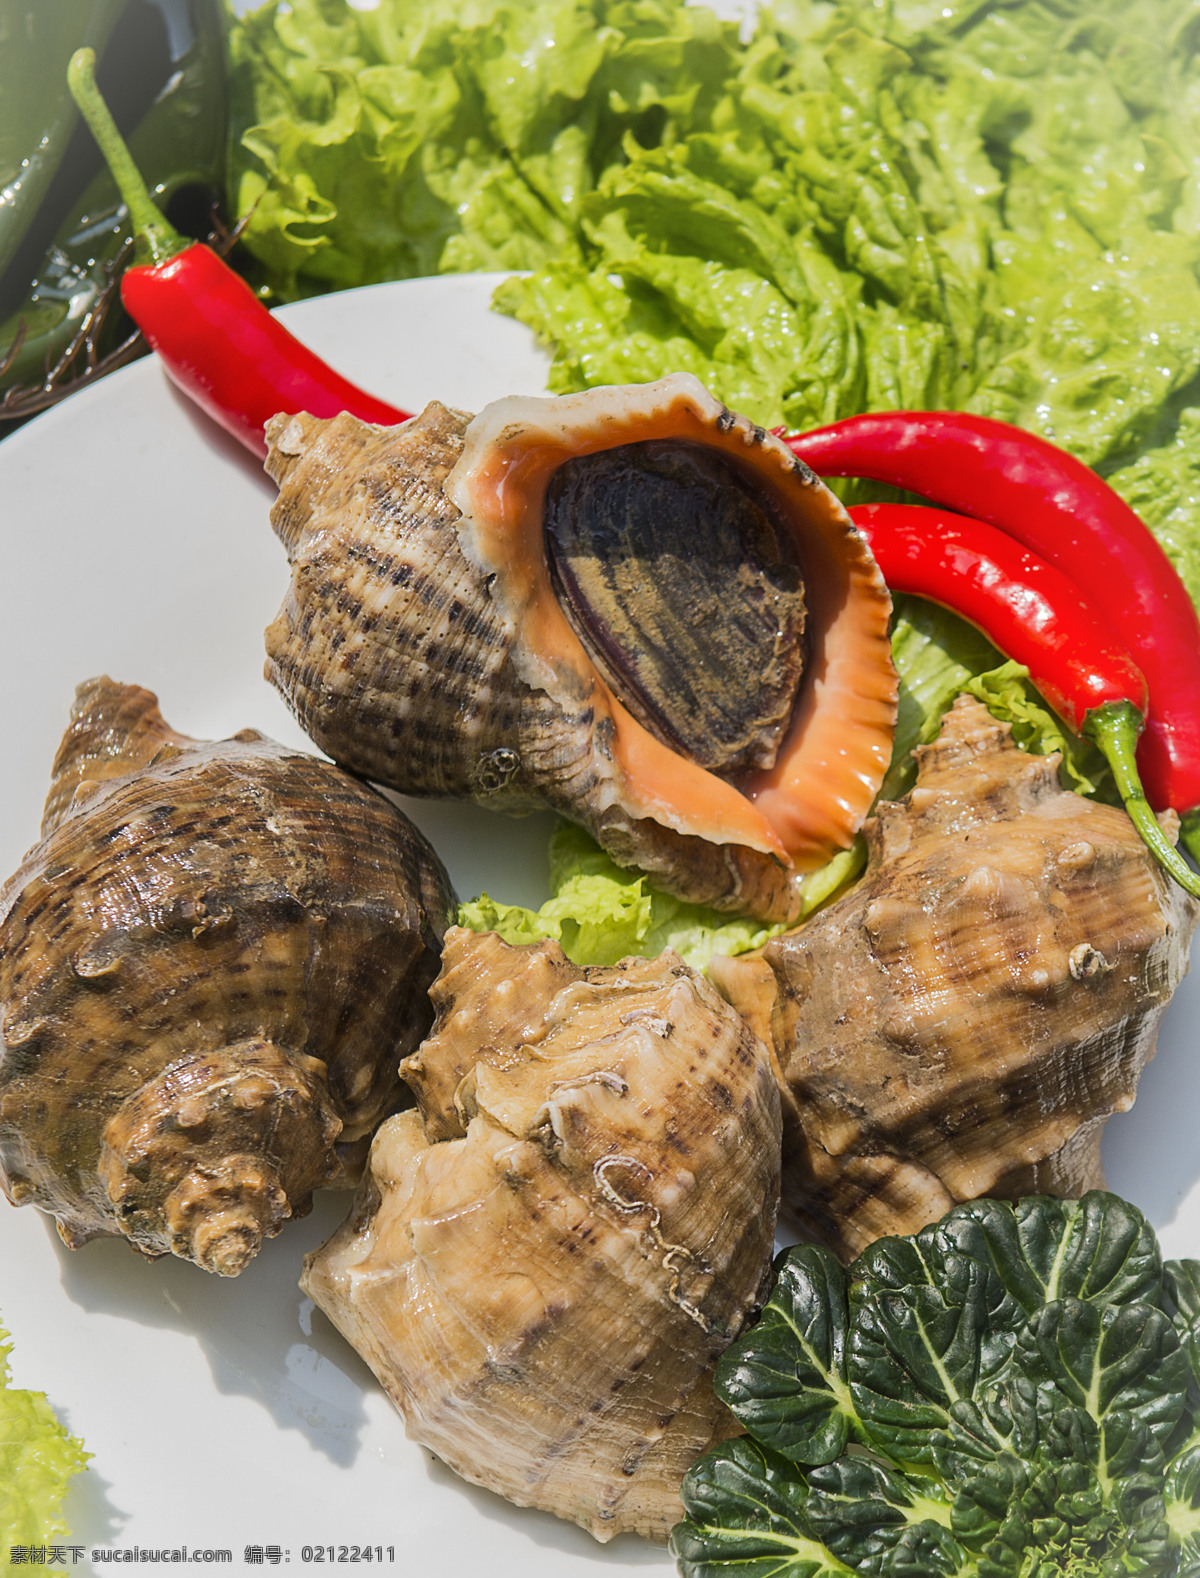 大海螺 海产品 鲜货 海洋食品 酒店食材 青岛特产 美味 餐饮美食 食物原料